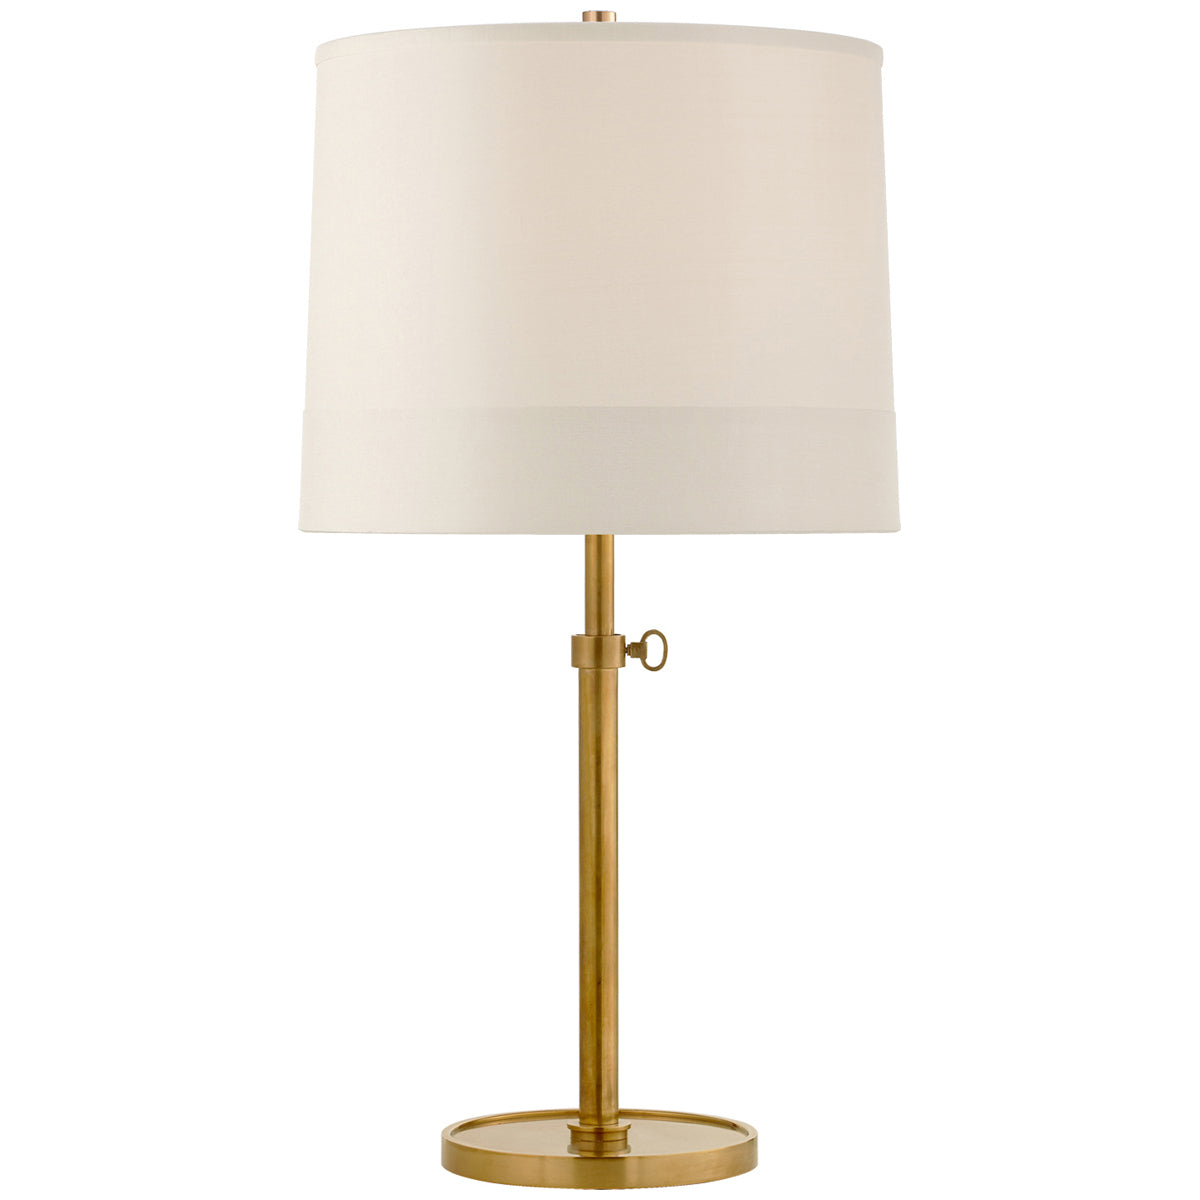 Visual Comfort Simple Adjustable Table Lamp